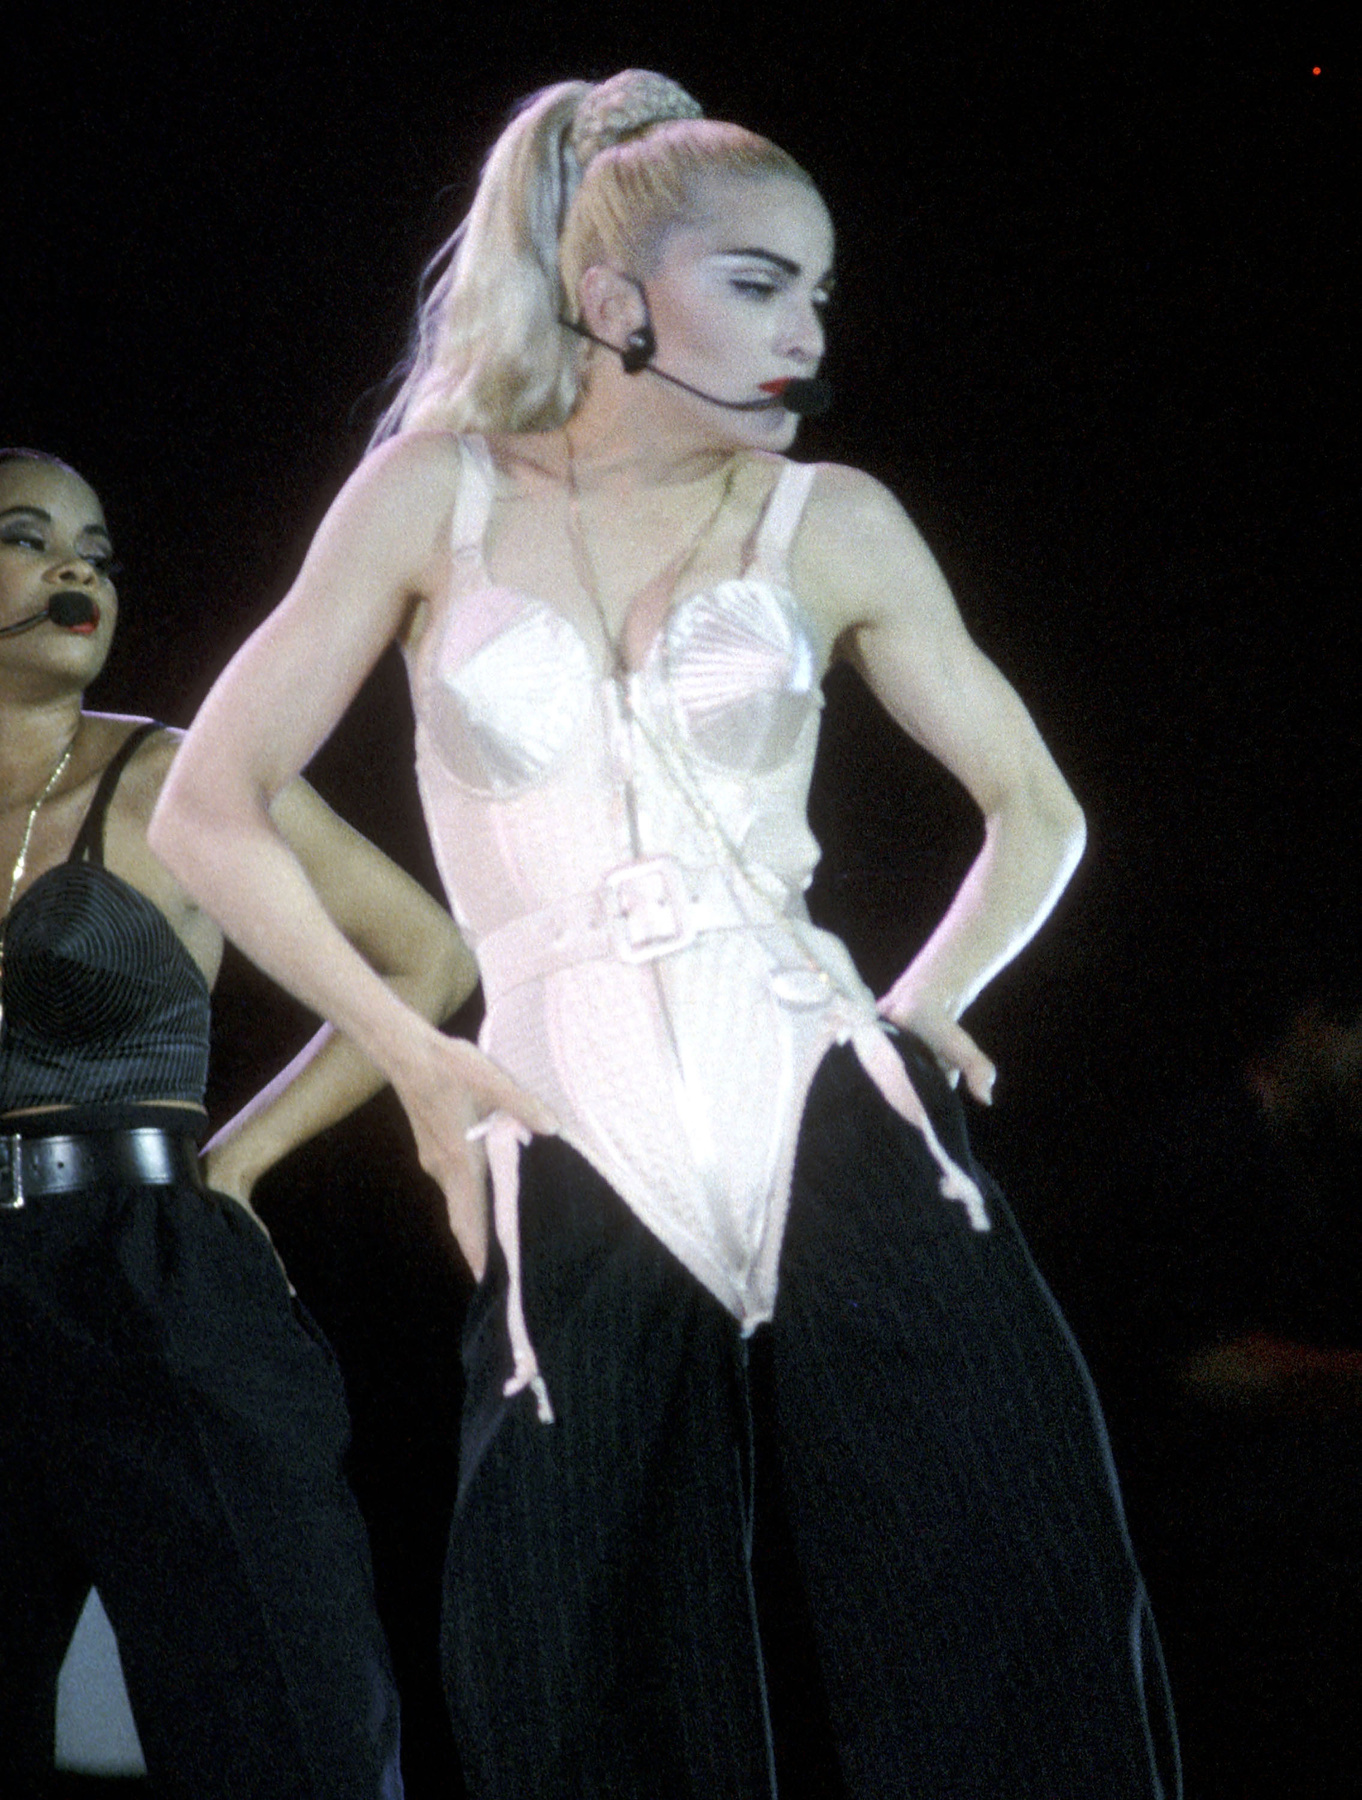 Minden idők egyik legjobb fellépő ruháját tervezte meg Jean Paul Gaultier Madonnának az 1990-es, nagy sikerű Blond Ambition World turnéra. Nem véletlen, hogy a mai napig ezt a melltartós szettet tartják az énekesnő legjobb választásának.
